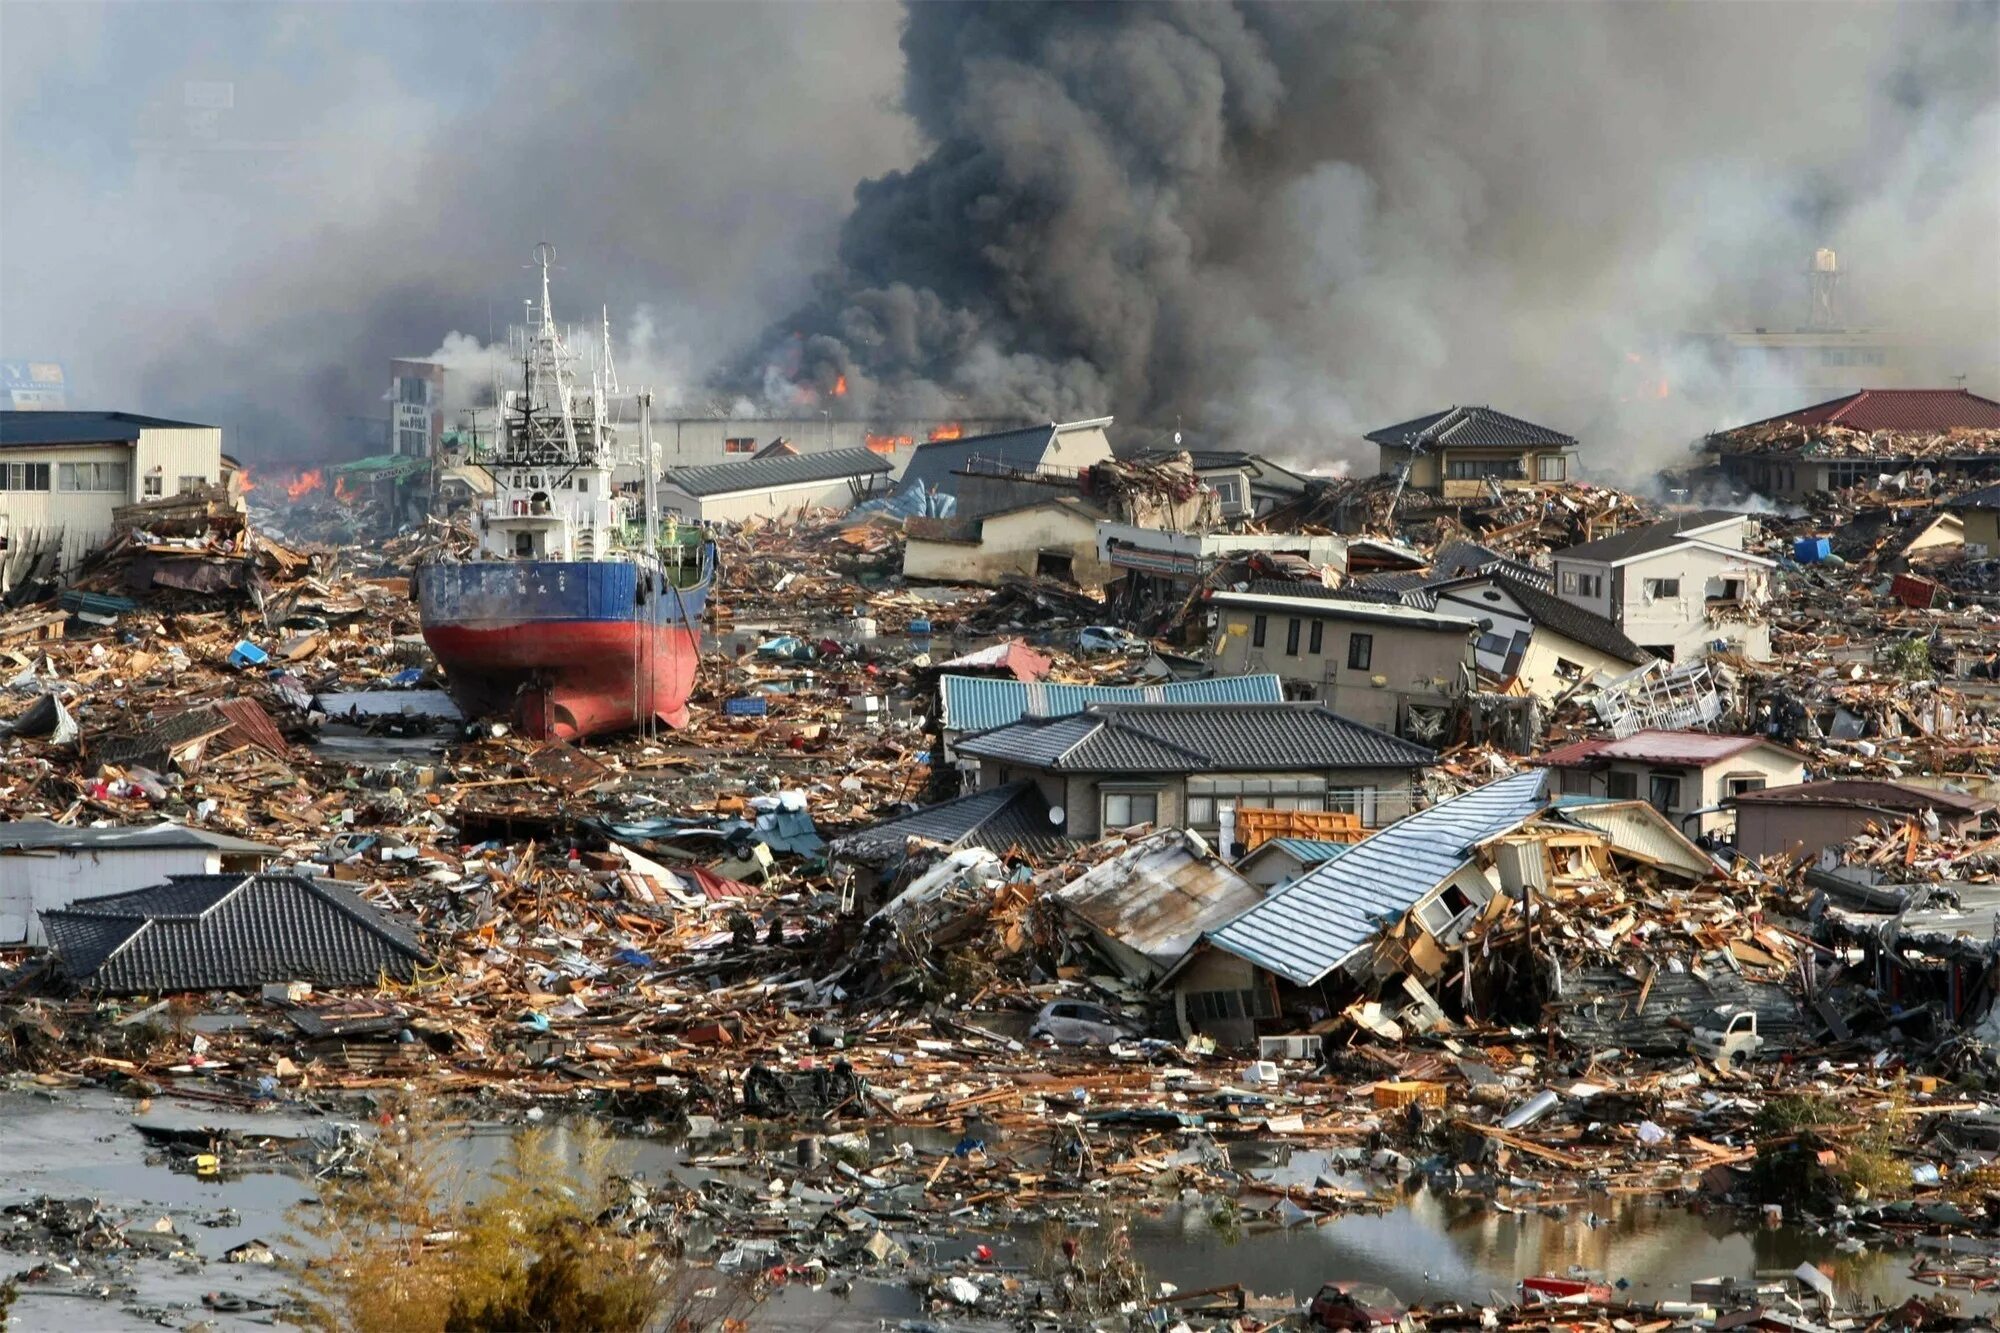 ЦУНАМИ В Японии в 2011. Землетрясение Тохоку 2011. ЦУНАМИ ЦУНАМИ В Японии 2011. Япония 2011 землетрясение и ЦУНАМИ.